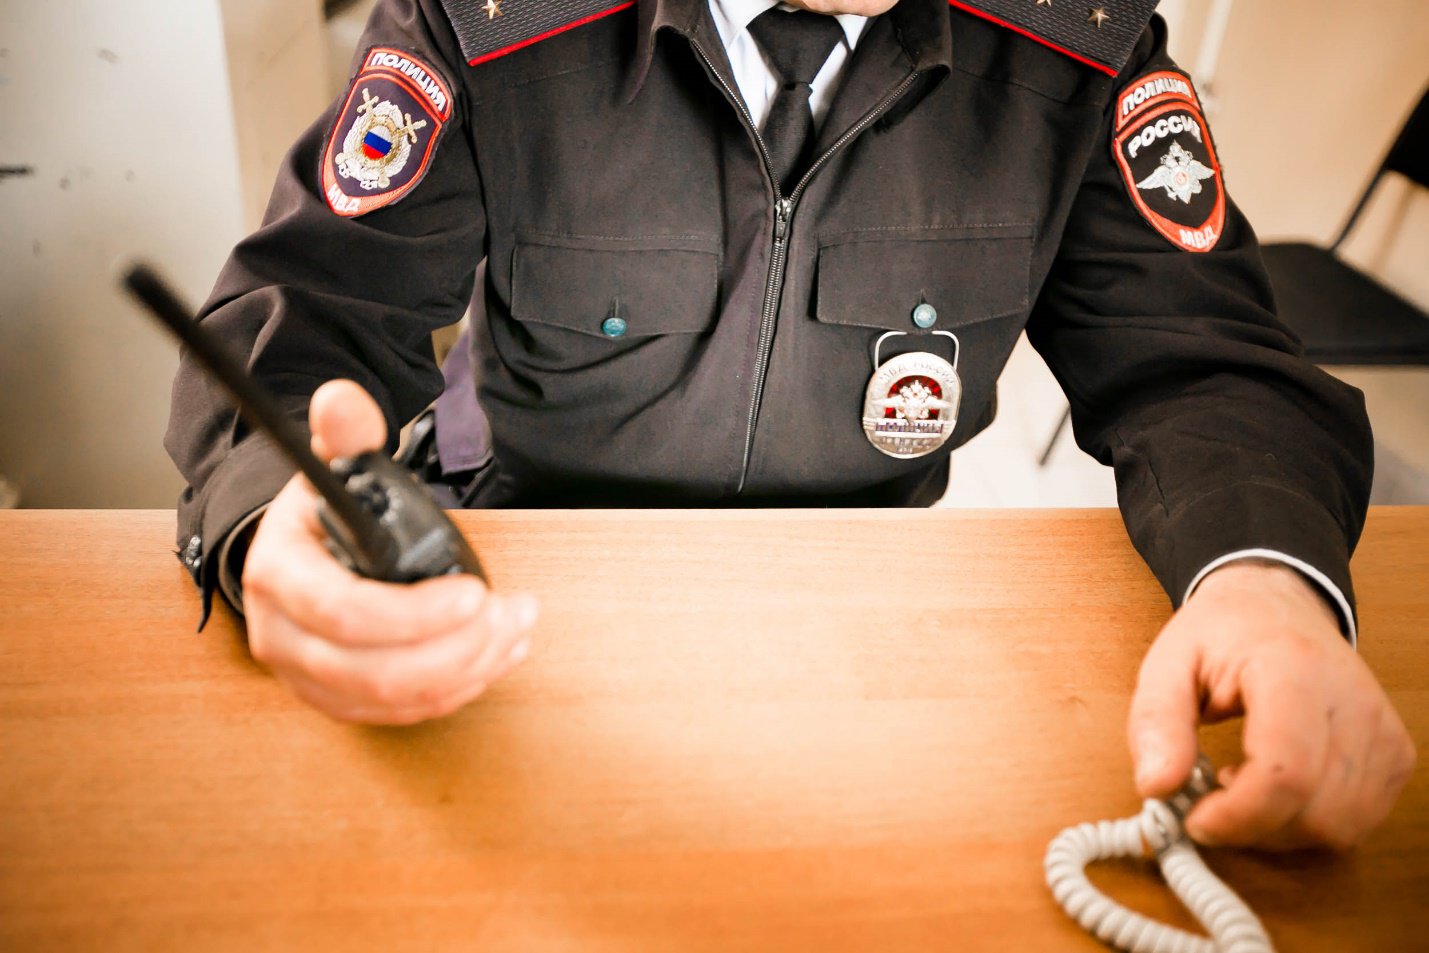 Отдел МВД России по Алтайскому району объявляет о наборе молодых людей на службу в органы внутренних дел.